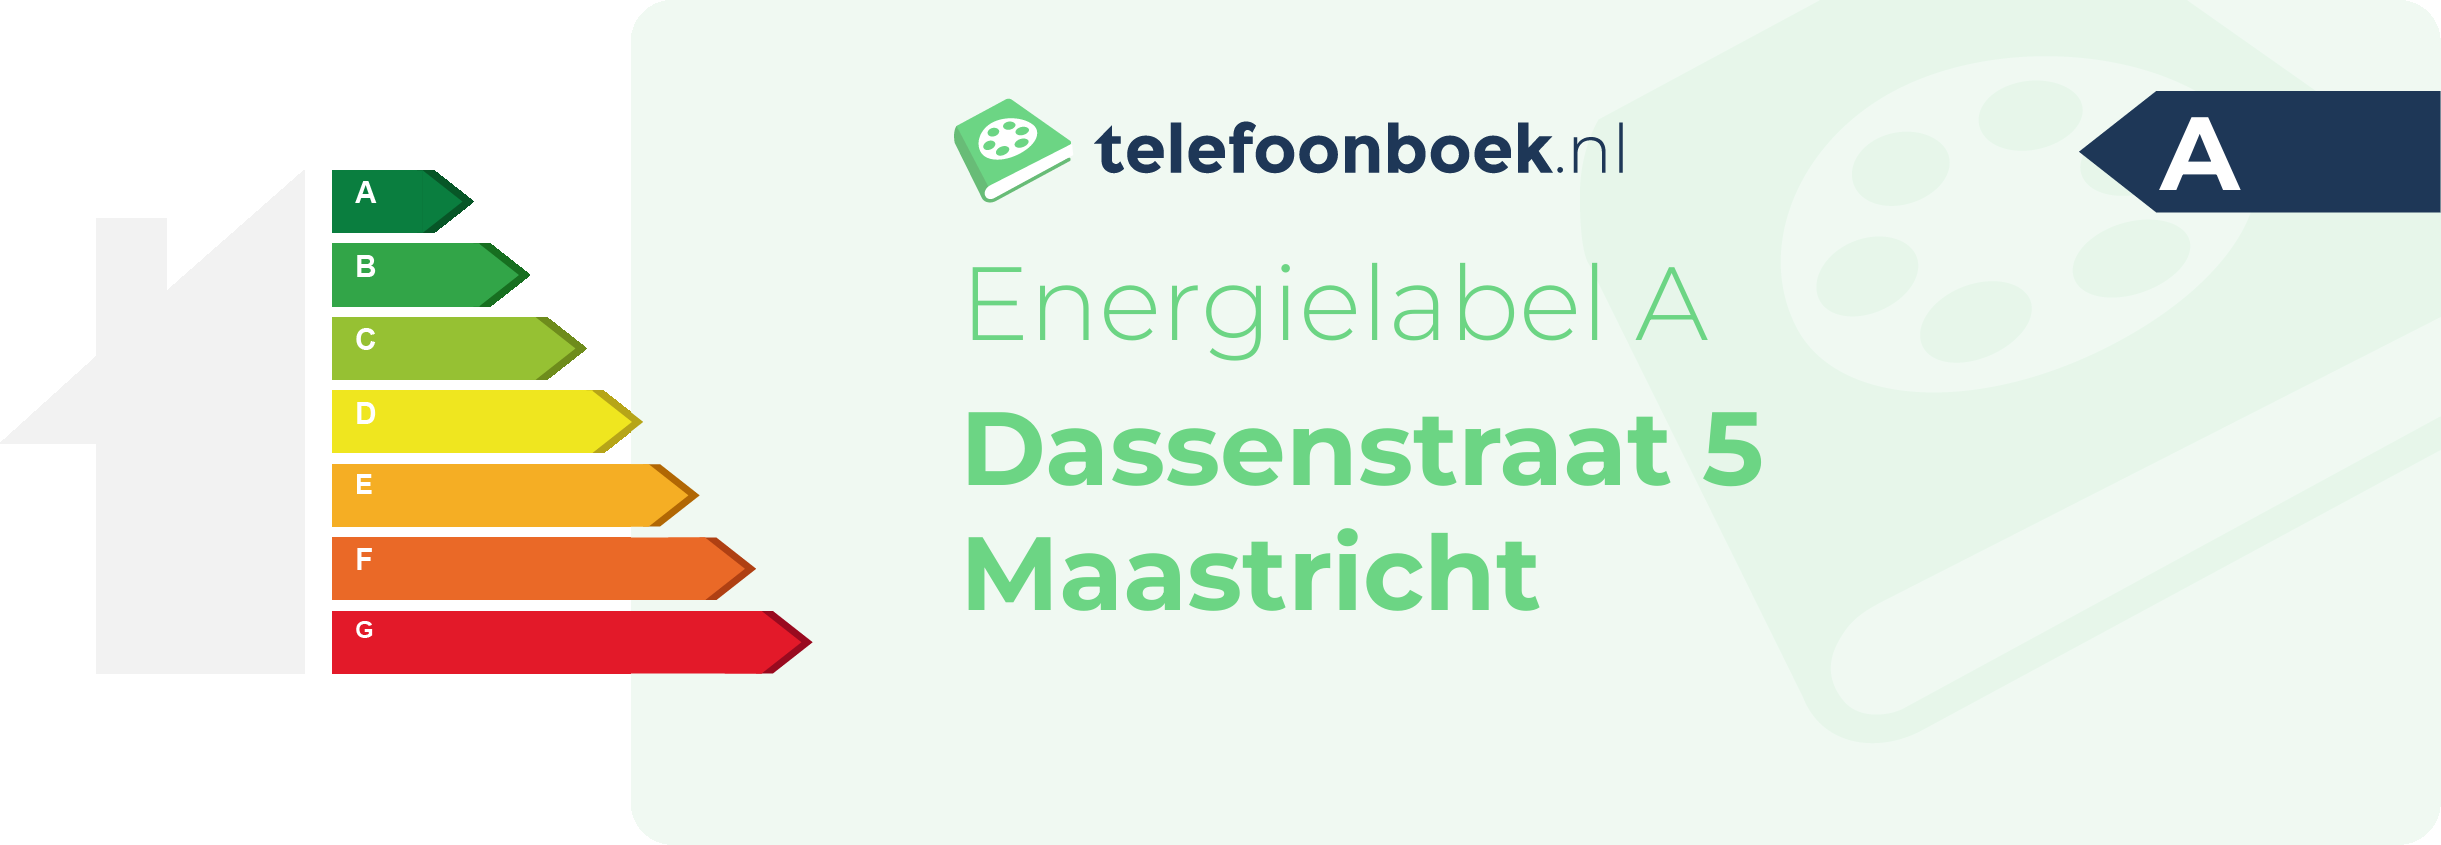 Energielabel Dassenstraat 5 Maastricht